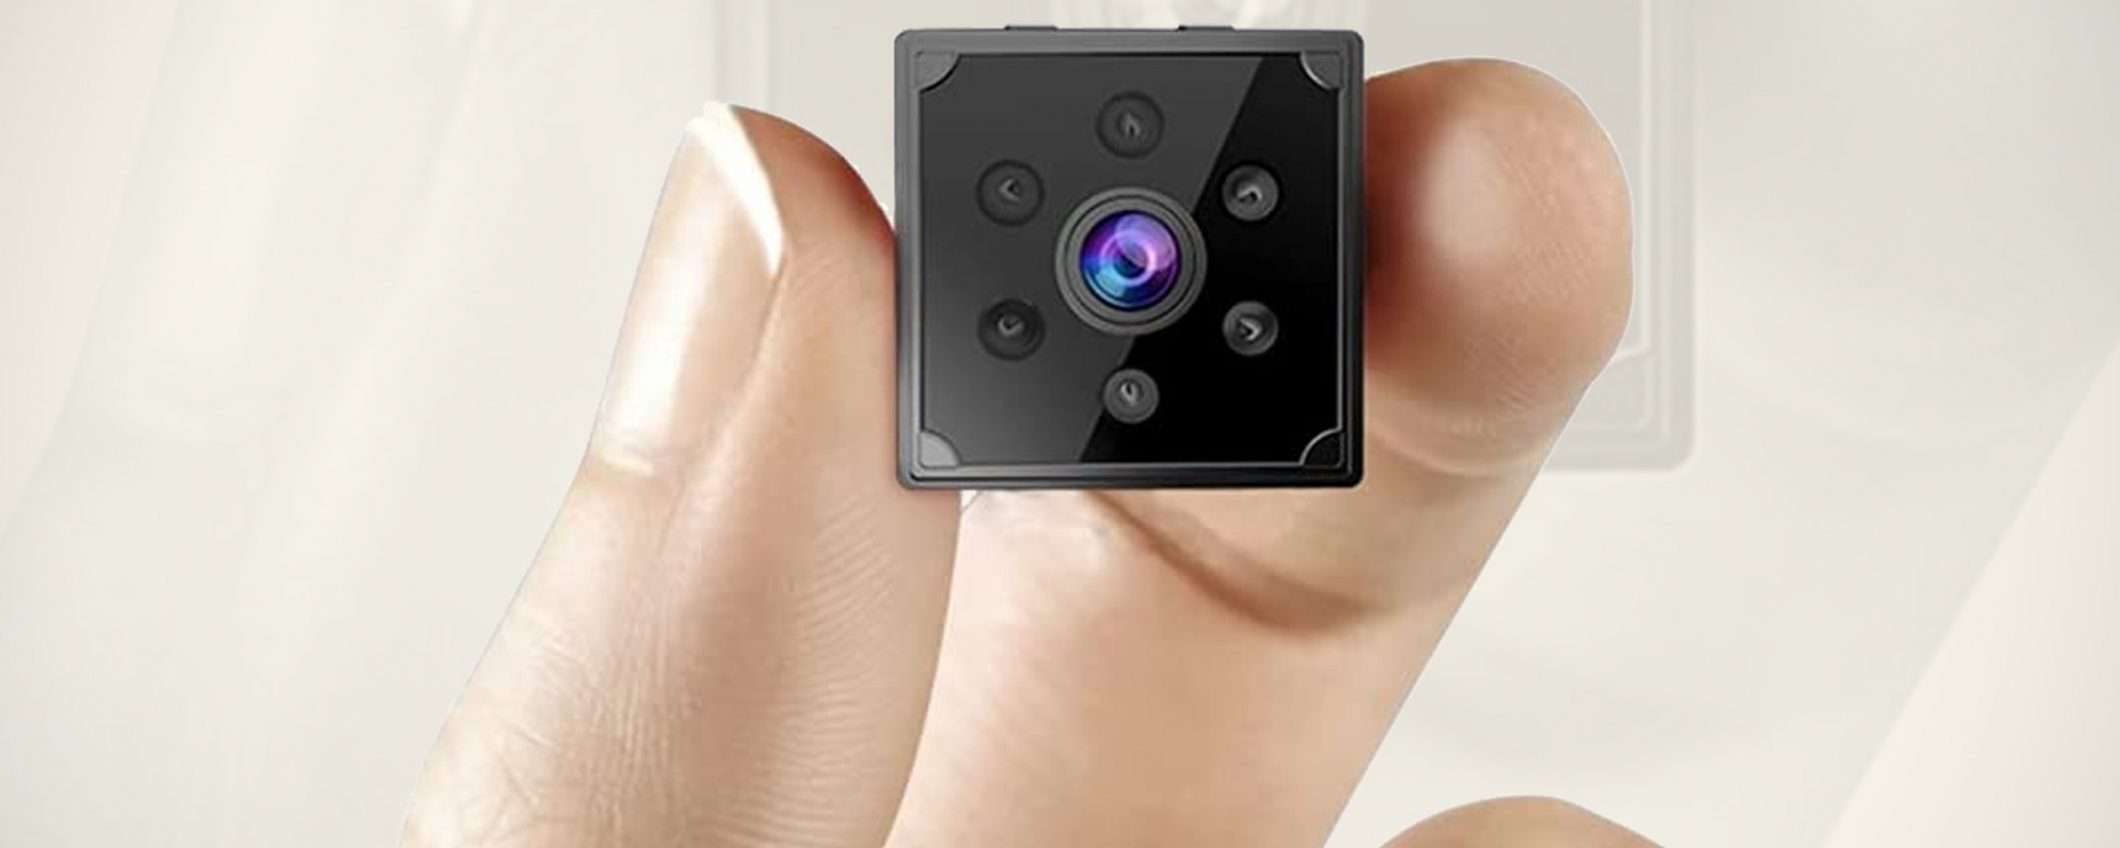 Micro-telecamera nascosta: la più venduta in sconto